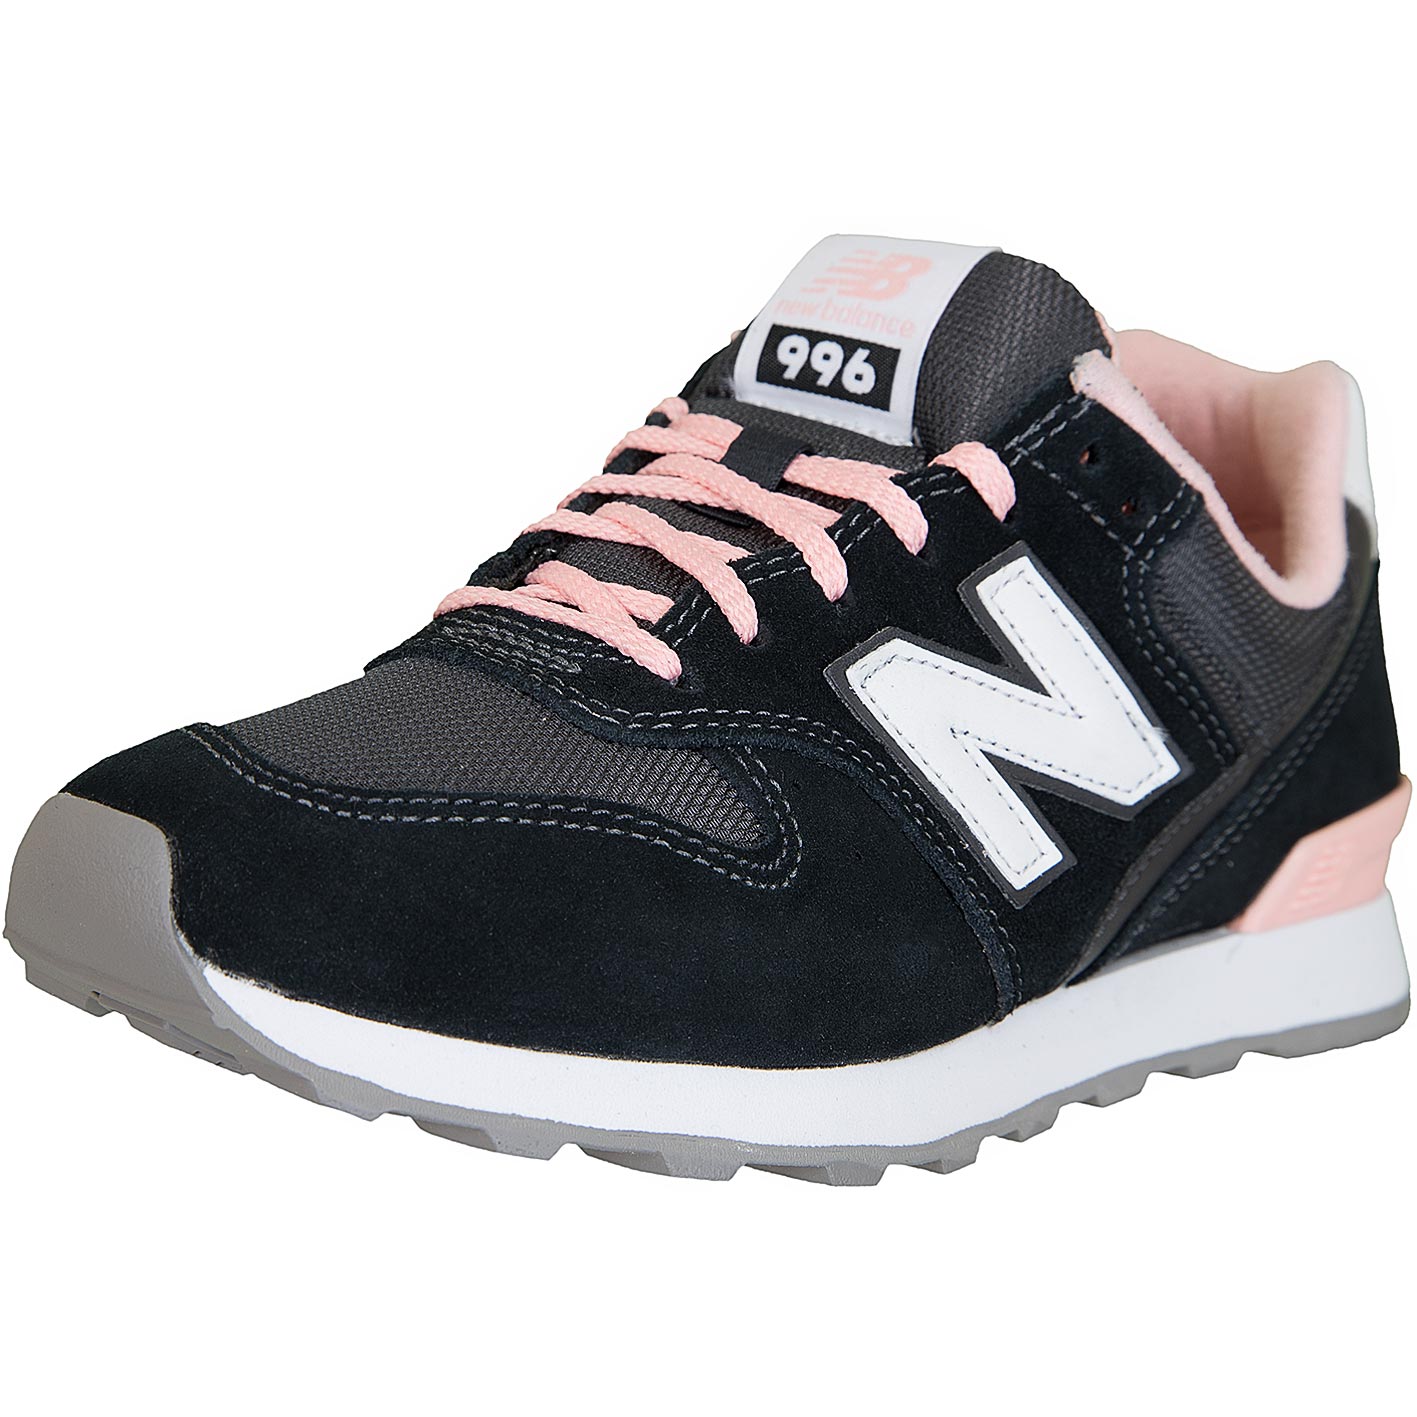 ☆ New Balance Sneaker 996 Leder/Textil/Synthetik schwarz/rosa - hier  bestellen!